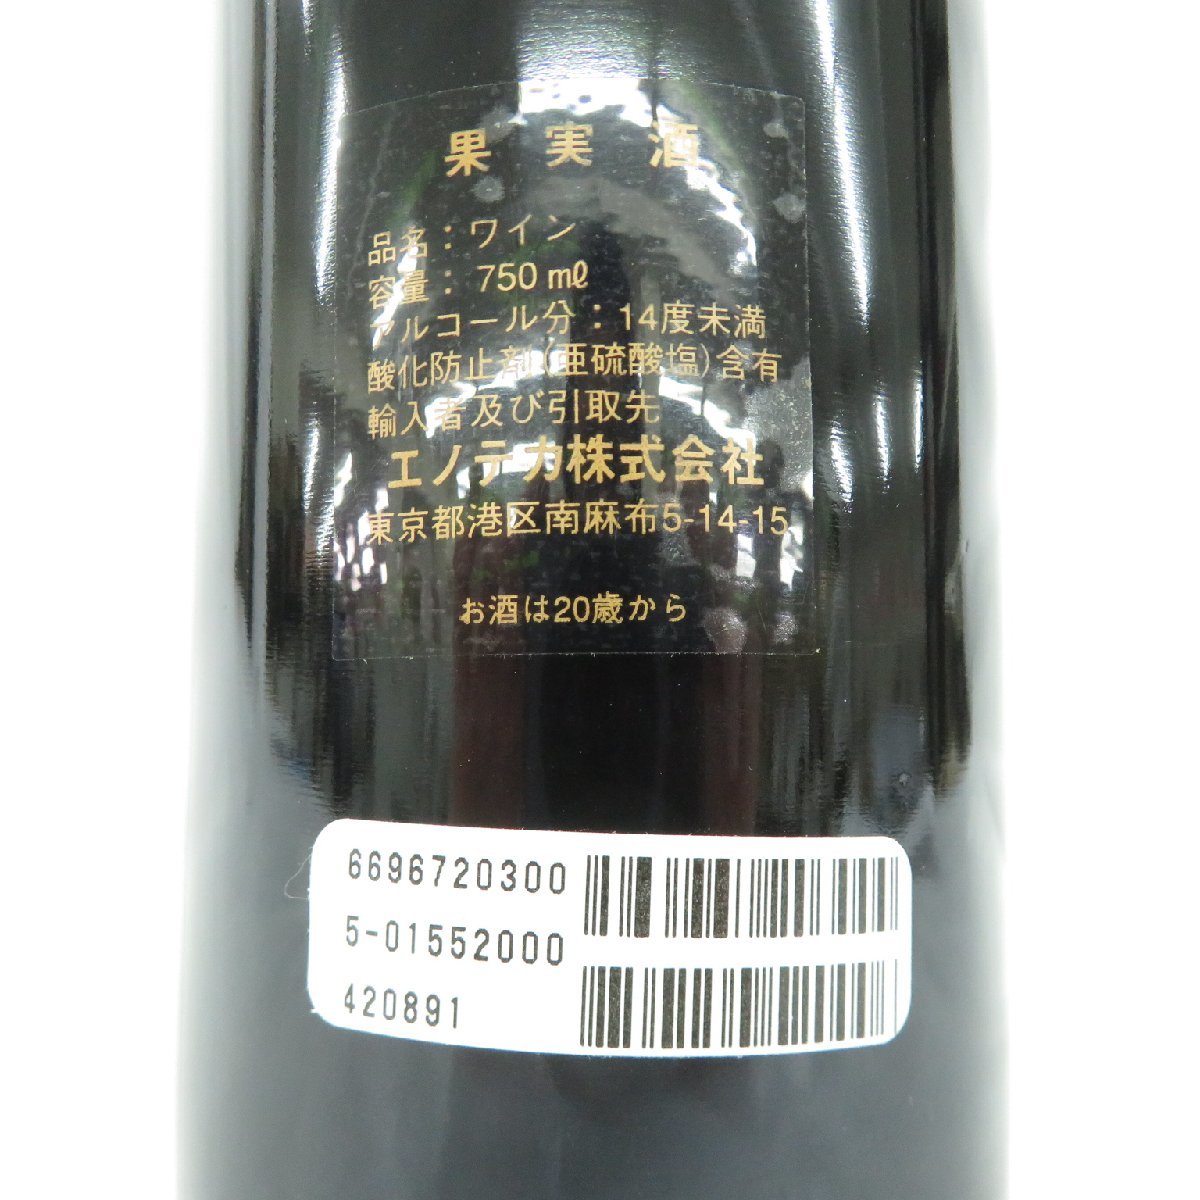 【未開栓】CHATEAU MARGAUX シャトー・マルゴー 2000 赤 ワイン 750ml 13% 11487410 0202_画像8